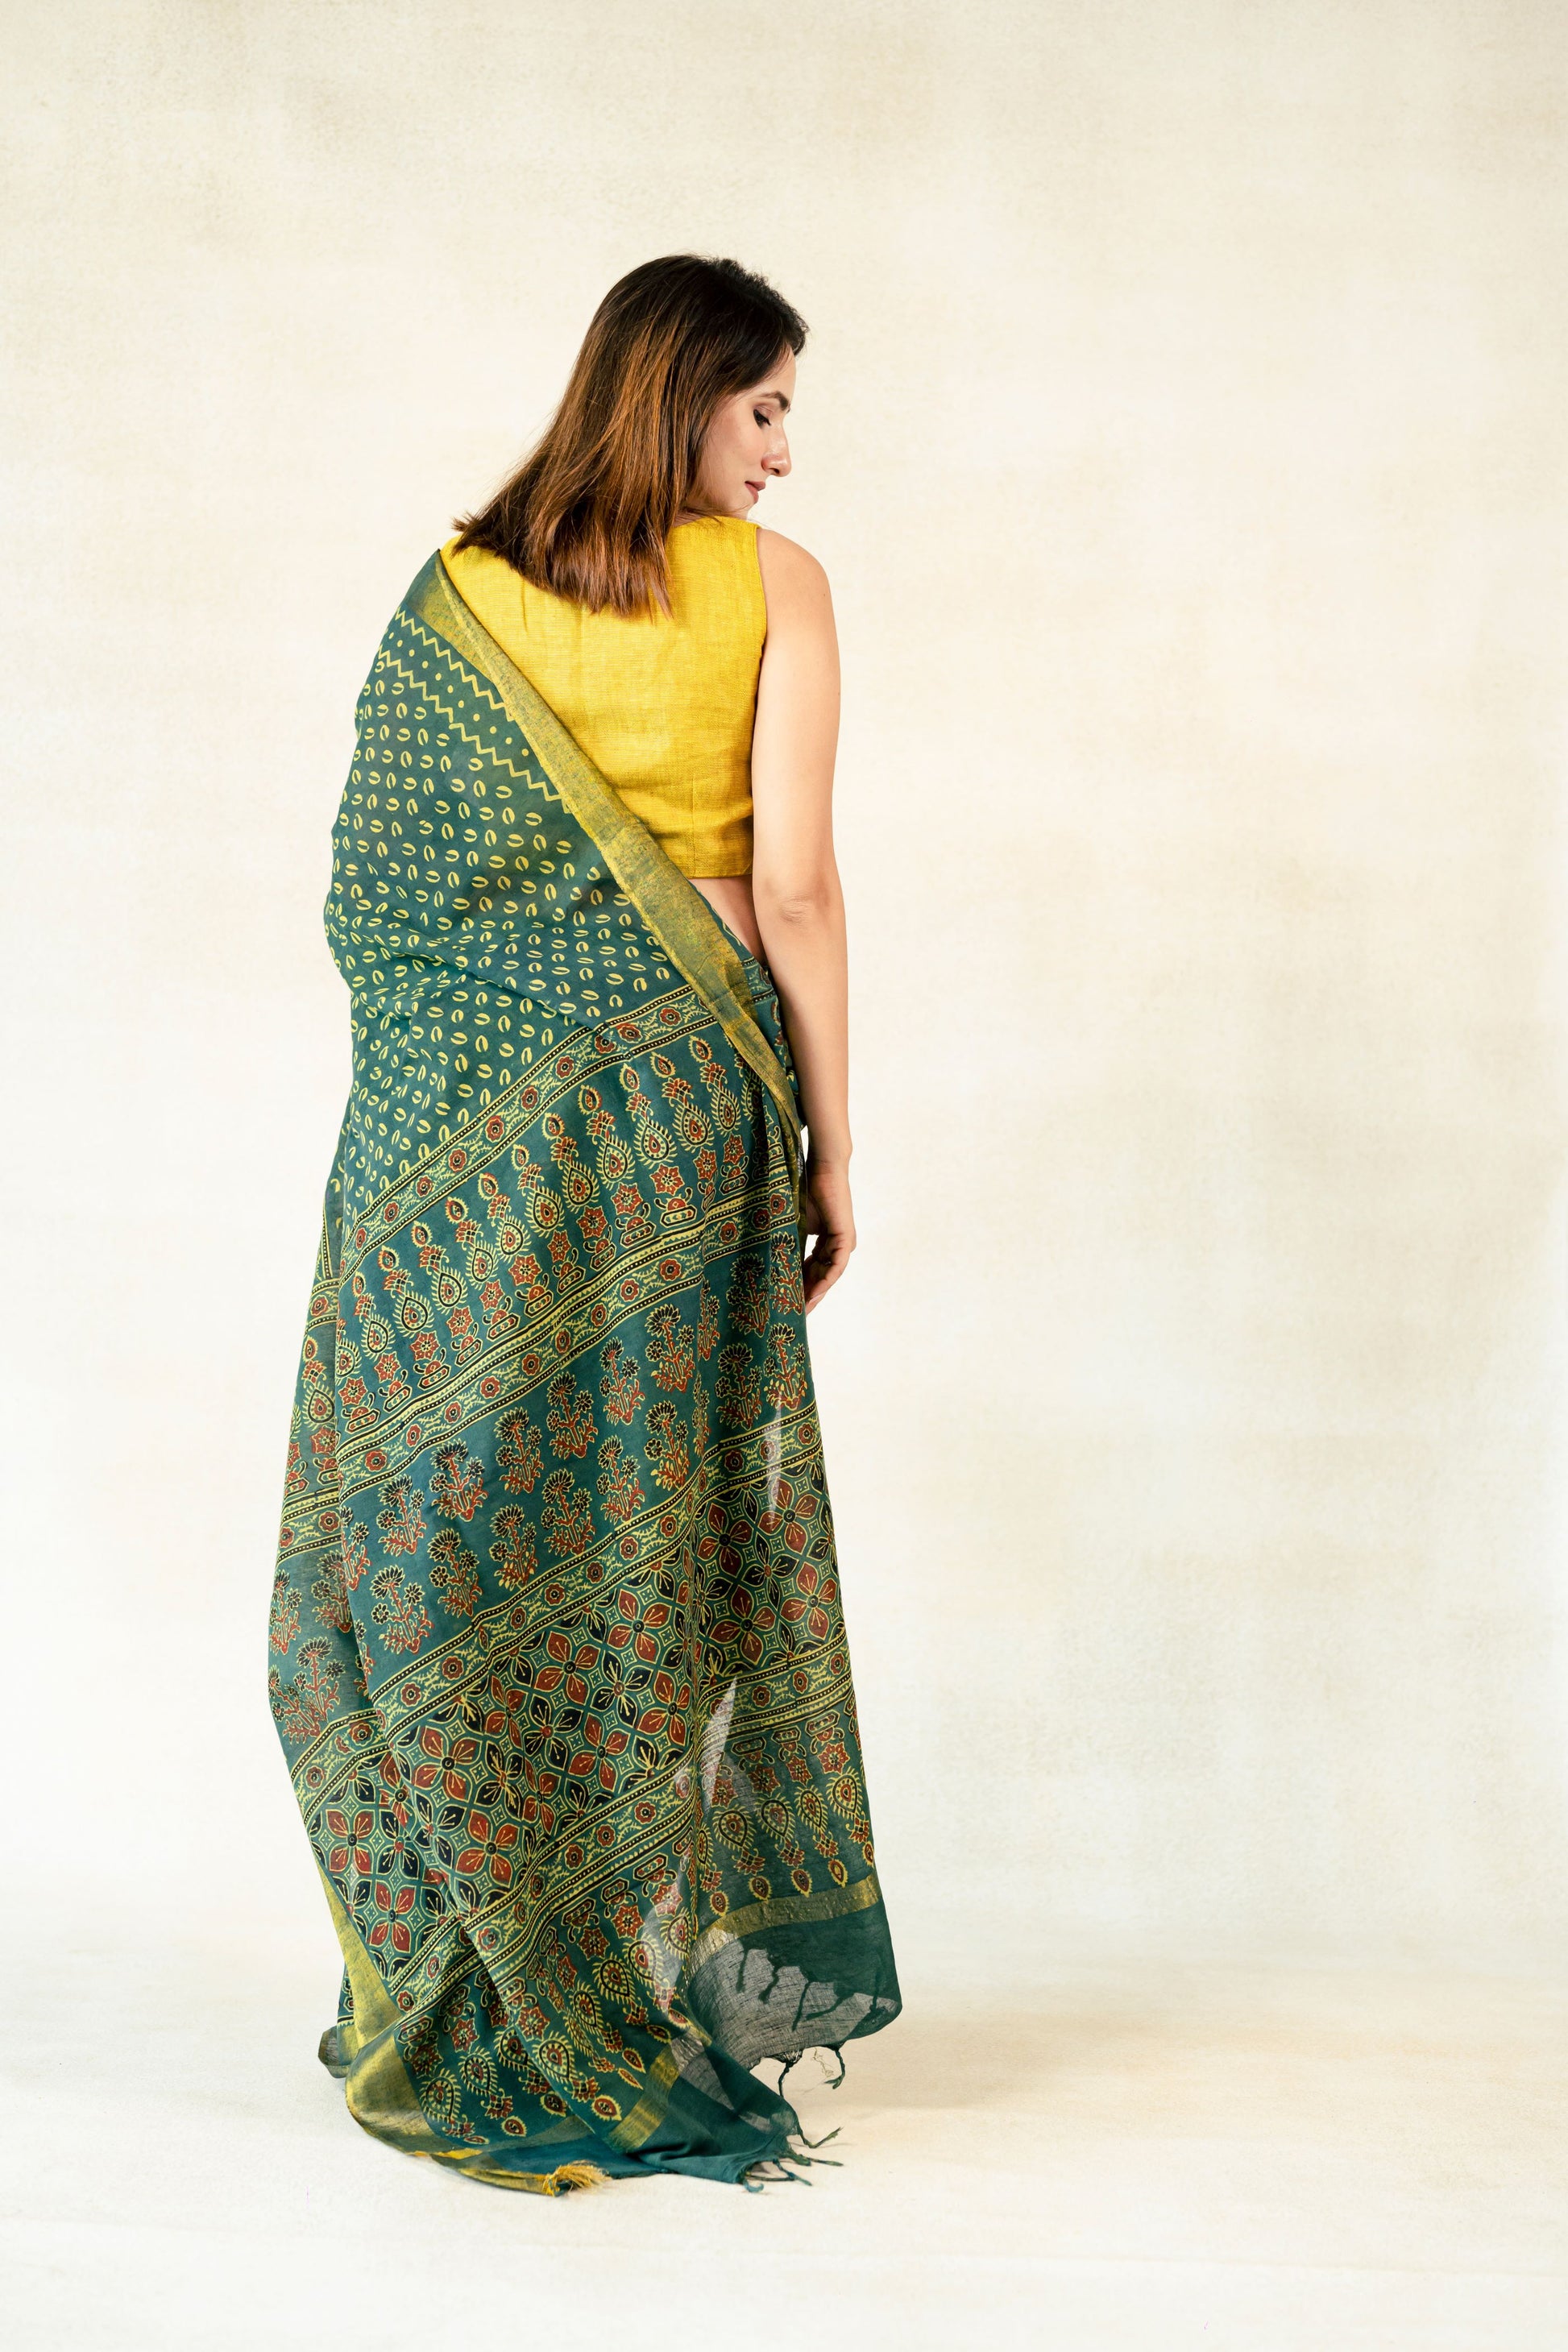 Green ajrakh prints linen saree, Linen ajrakh saree, Green ajrakh hand block print linen sari, Linen sari, Ethical fashion